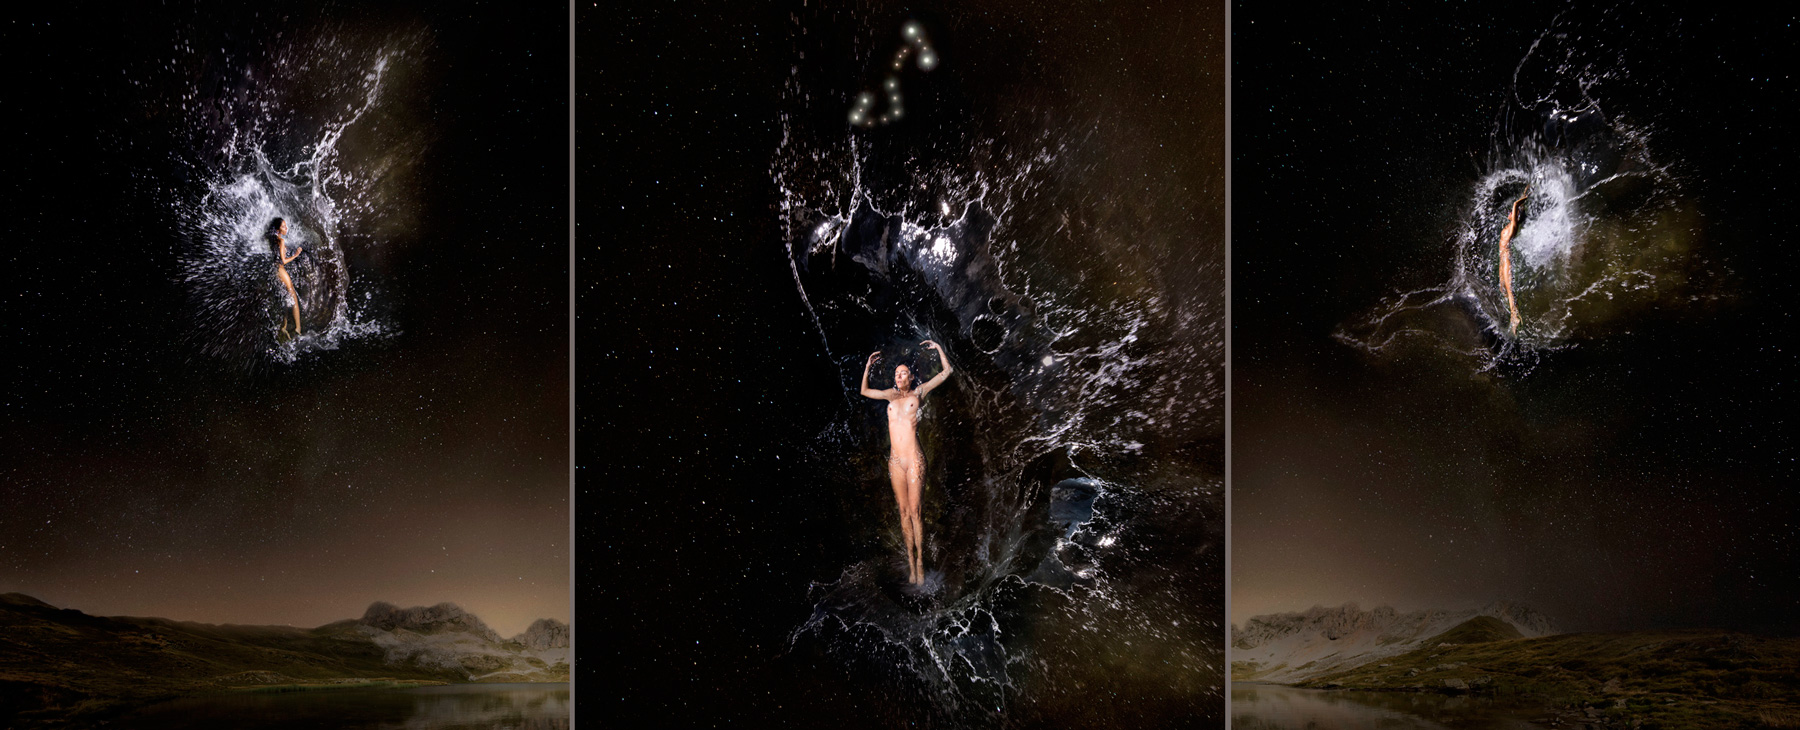 EUFONÍA de la Constelación de ESCORPIO. Fotografía digital nocturna y acuática. Configuración y retoque digitales